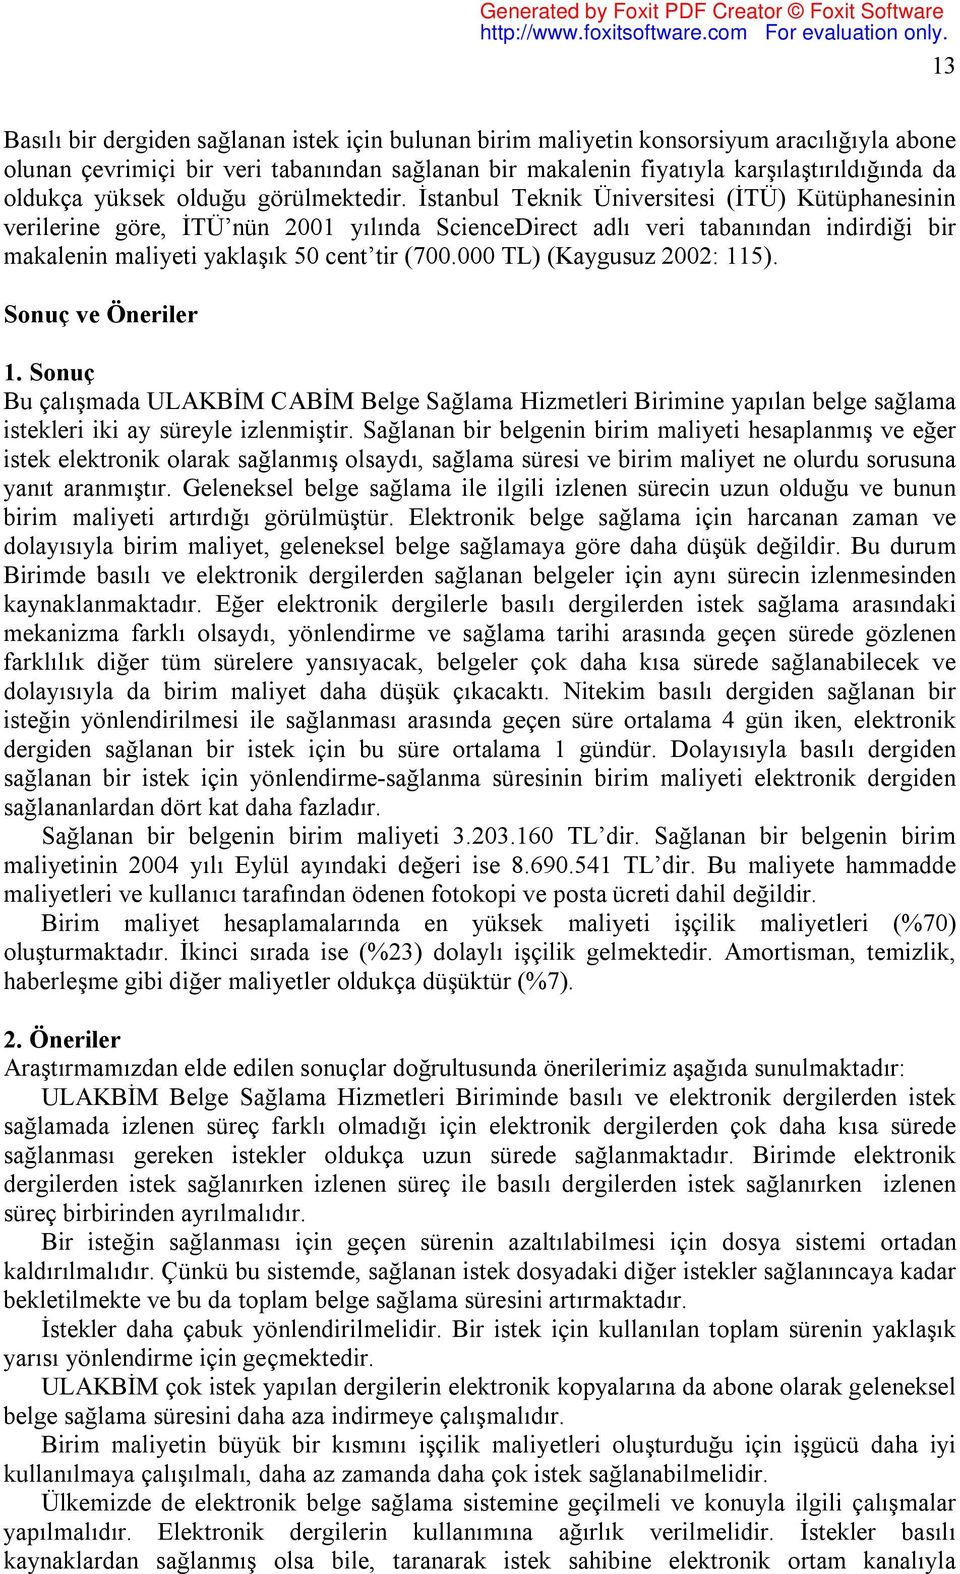 İstanbul Teknik Üniversitesi (İTÜ) Kütüphanesinin verilerine göre, İTÜ nün 2001 yılında ScienceDirect adlı veri tabanından indirdiği bir makalenin maliyeti yaklaşık 50 cent tir (700.